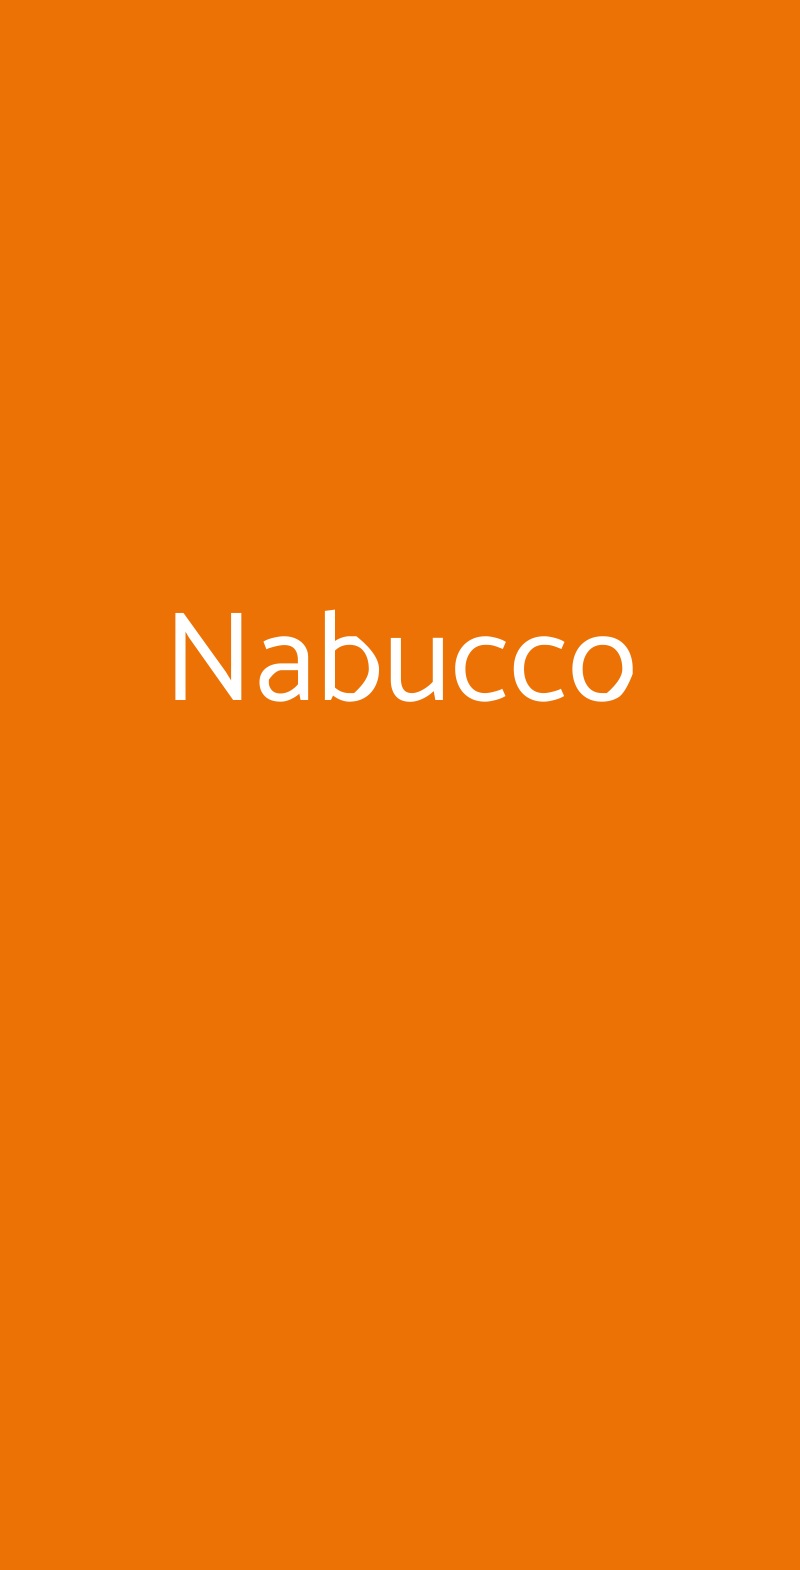 Nabucco Milano menù 1 pagina